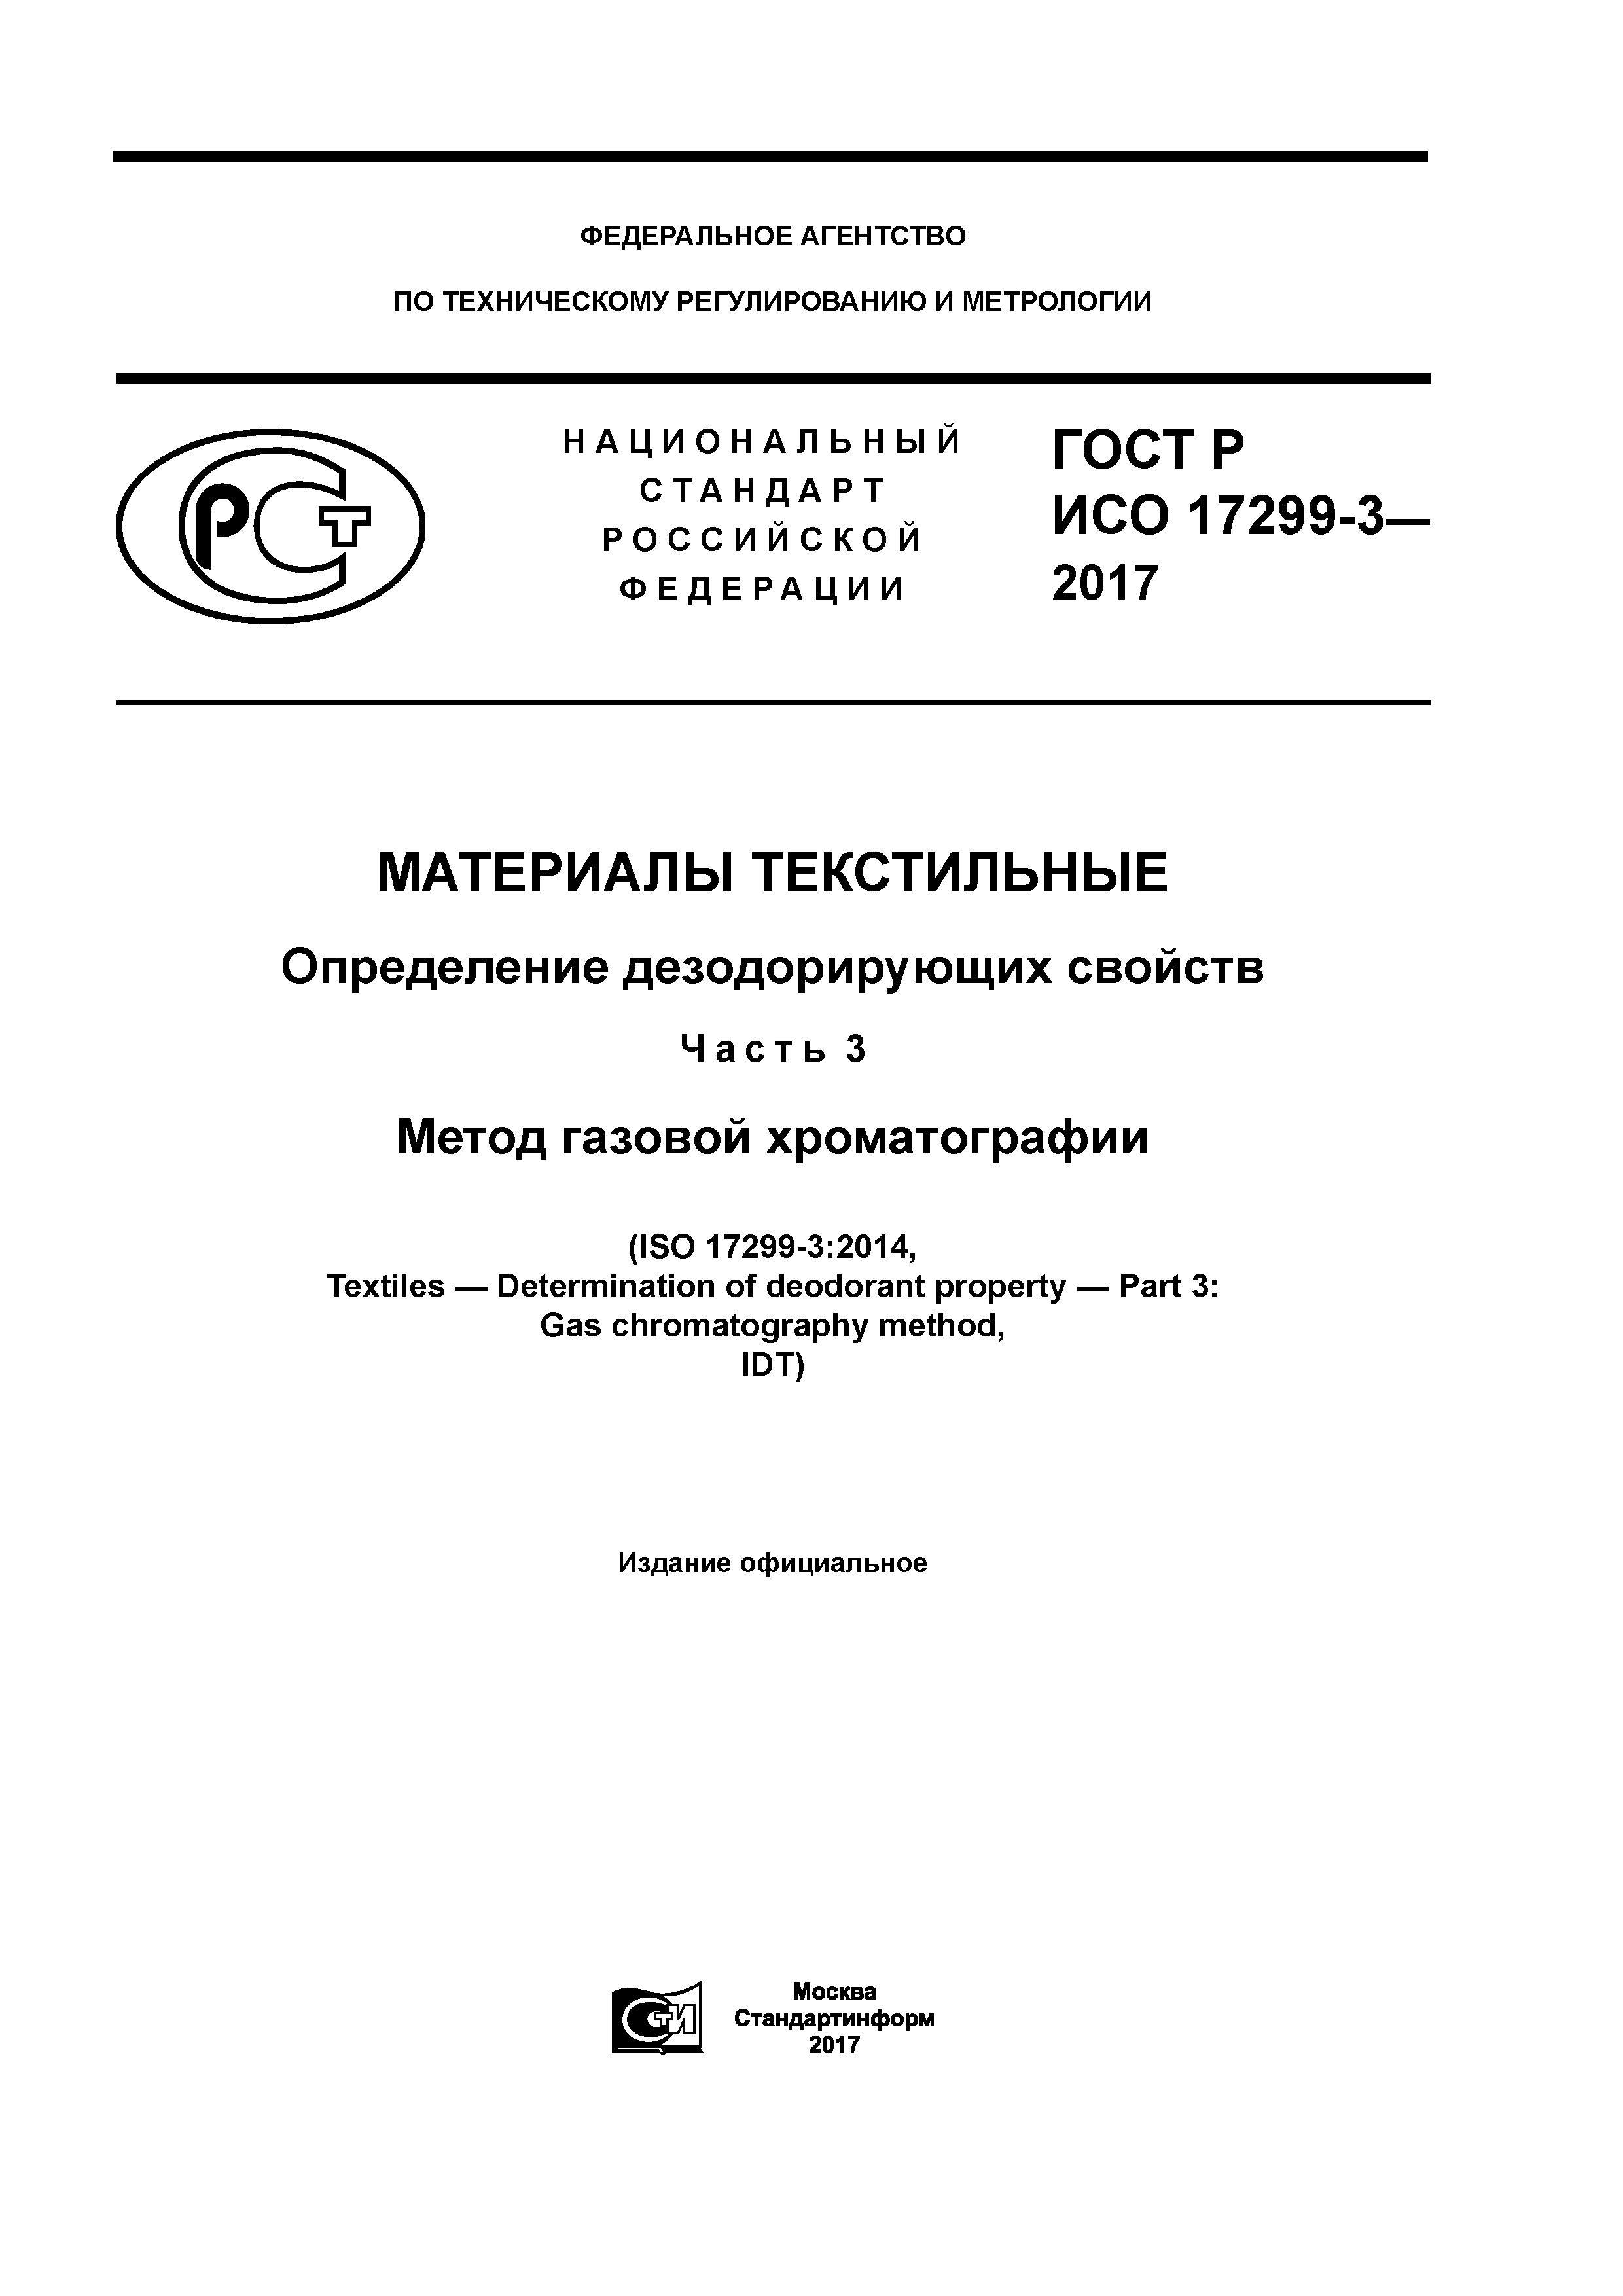 ГОСТ Р ИСО 17299-3-2017